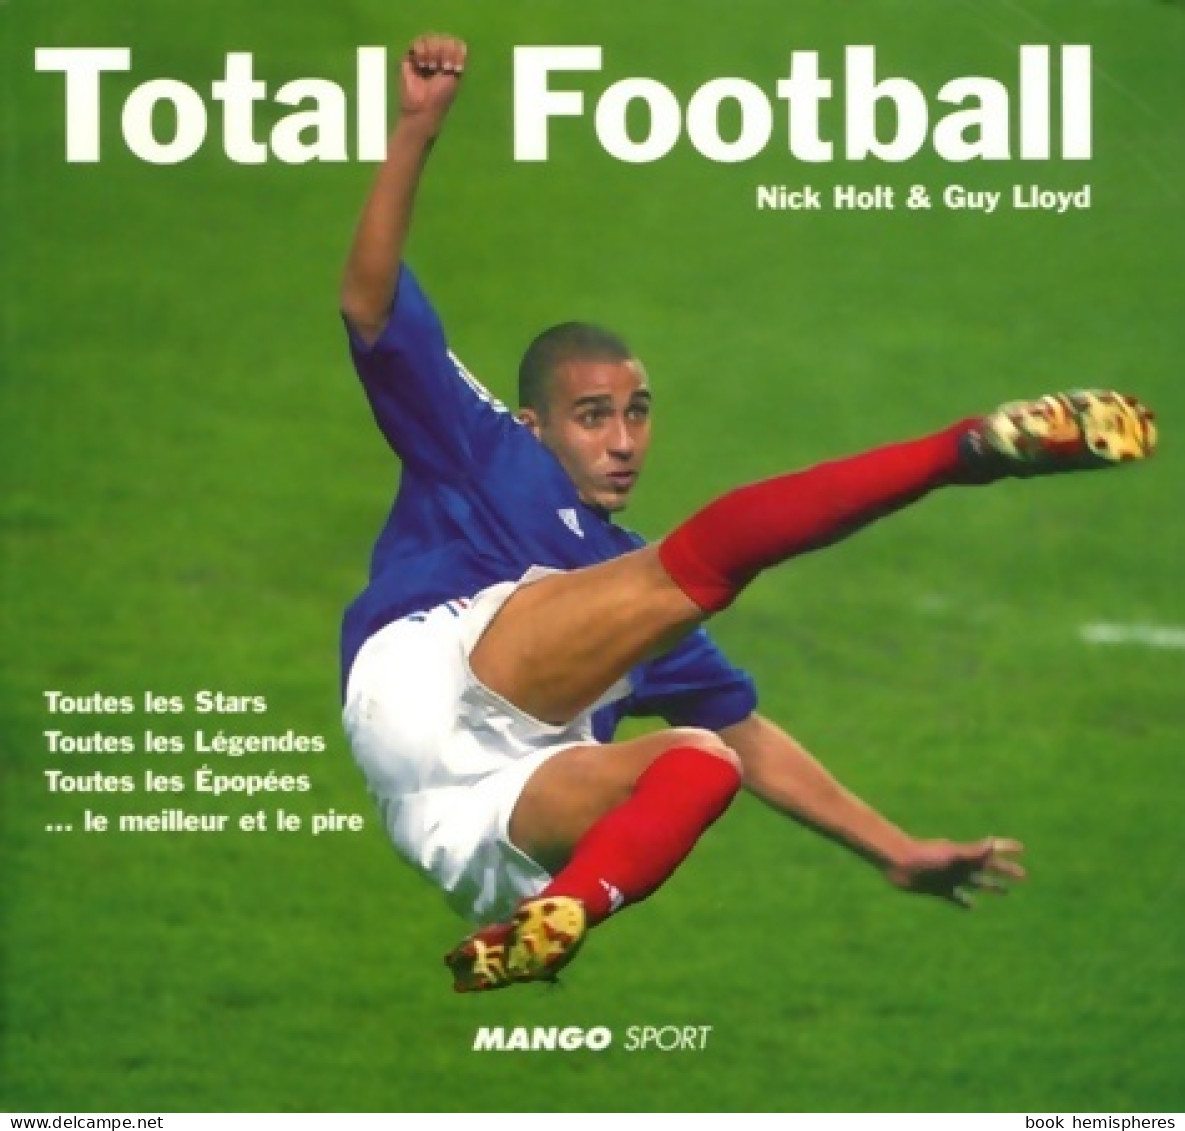 Total Football (2006) De Nick Holt - Deportes